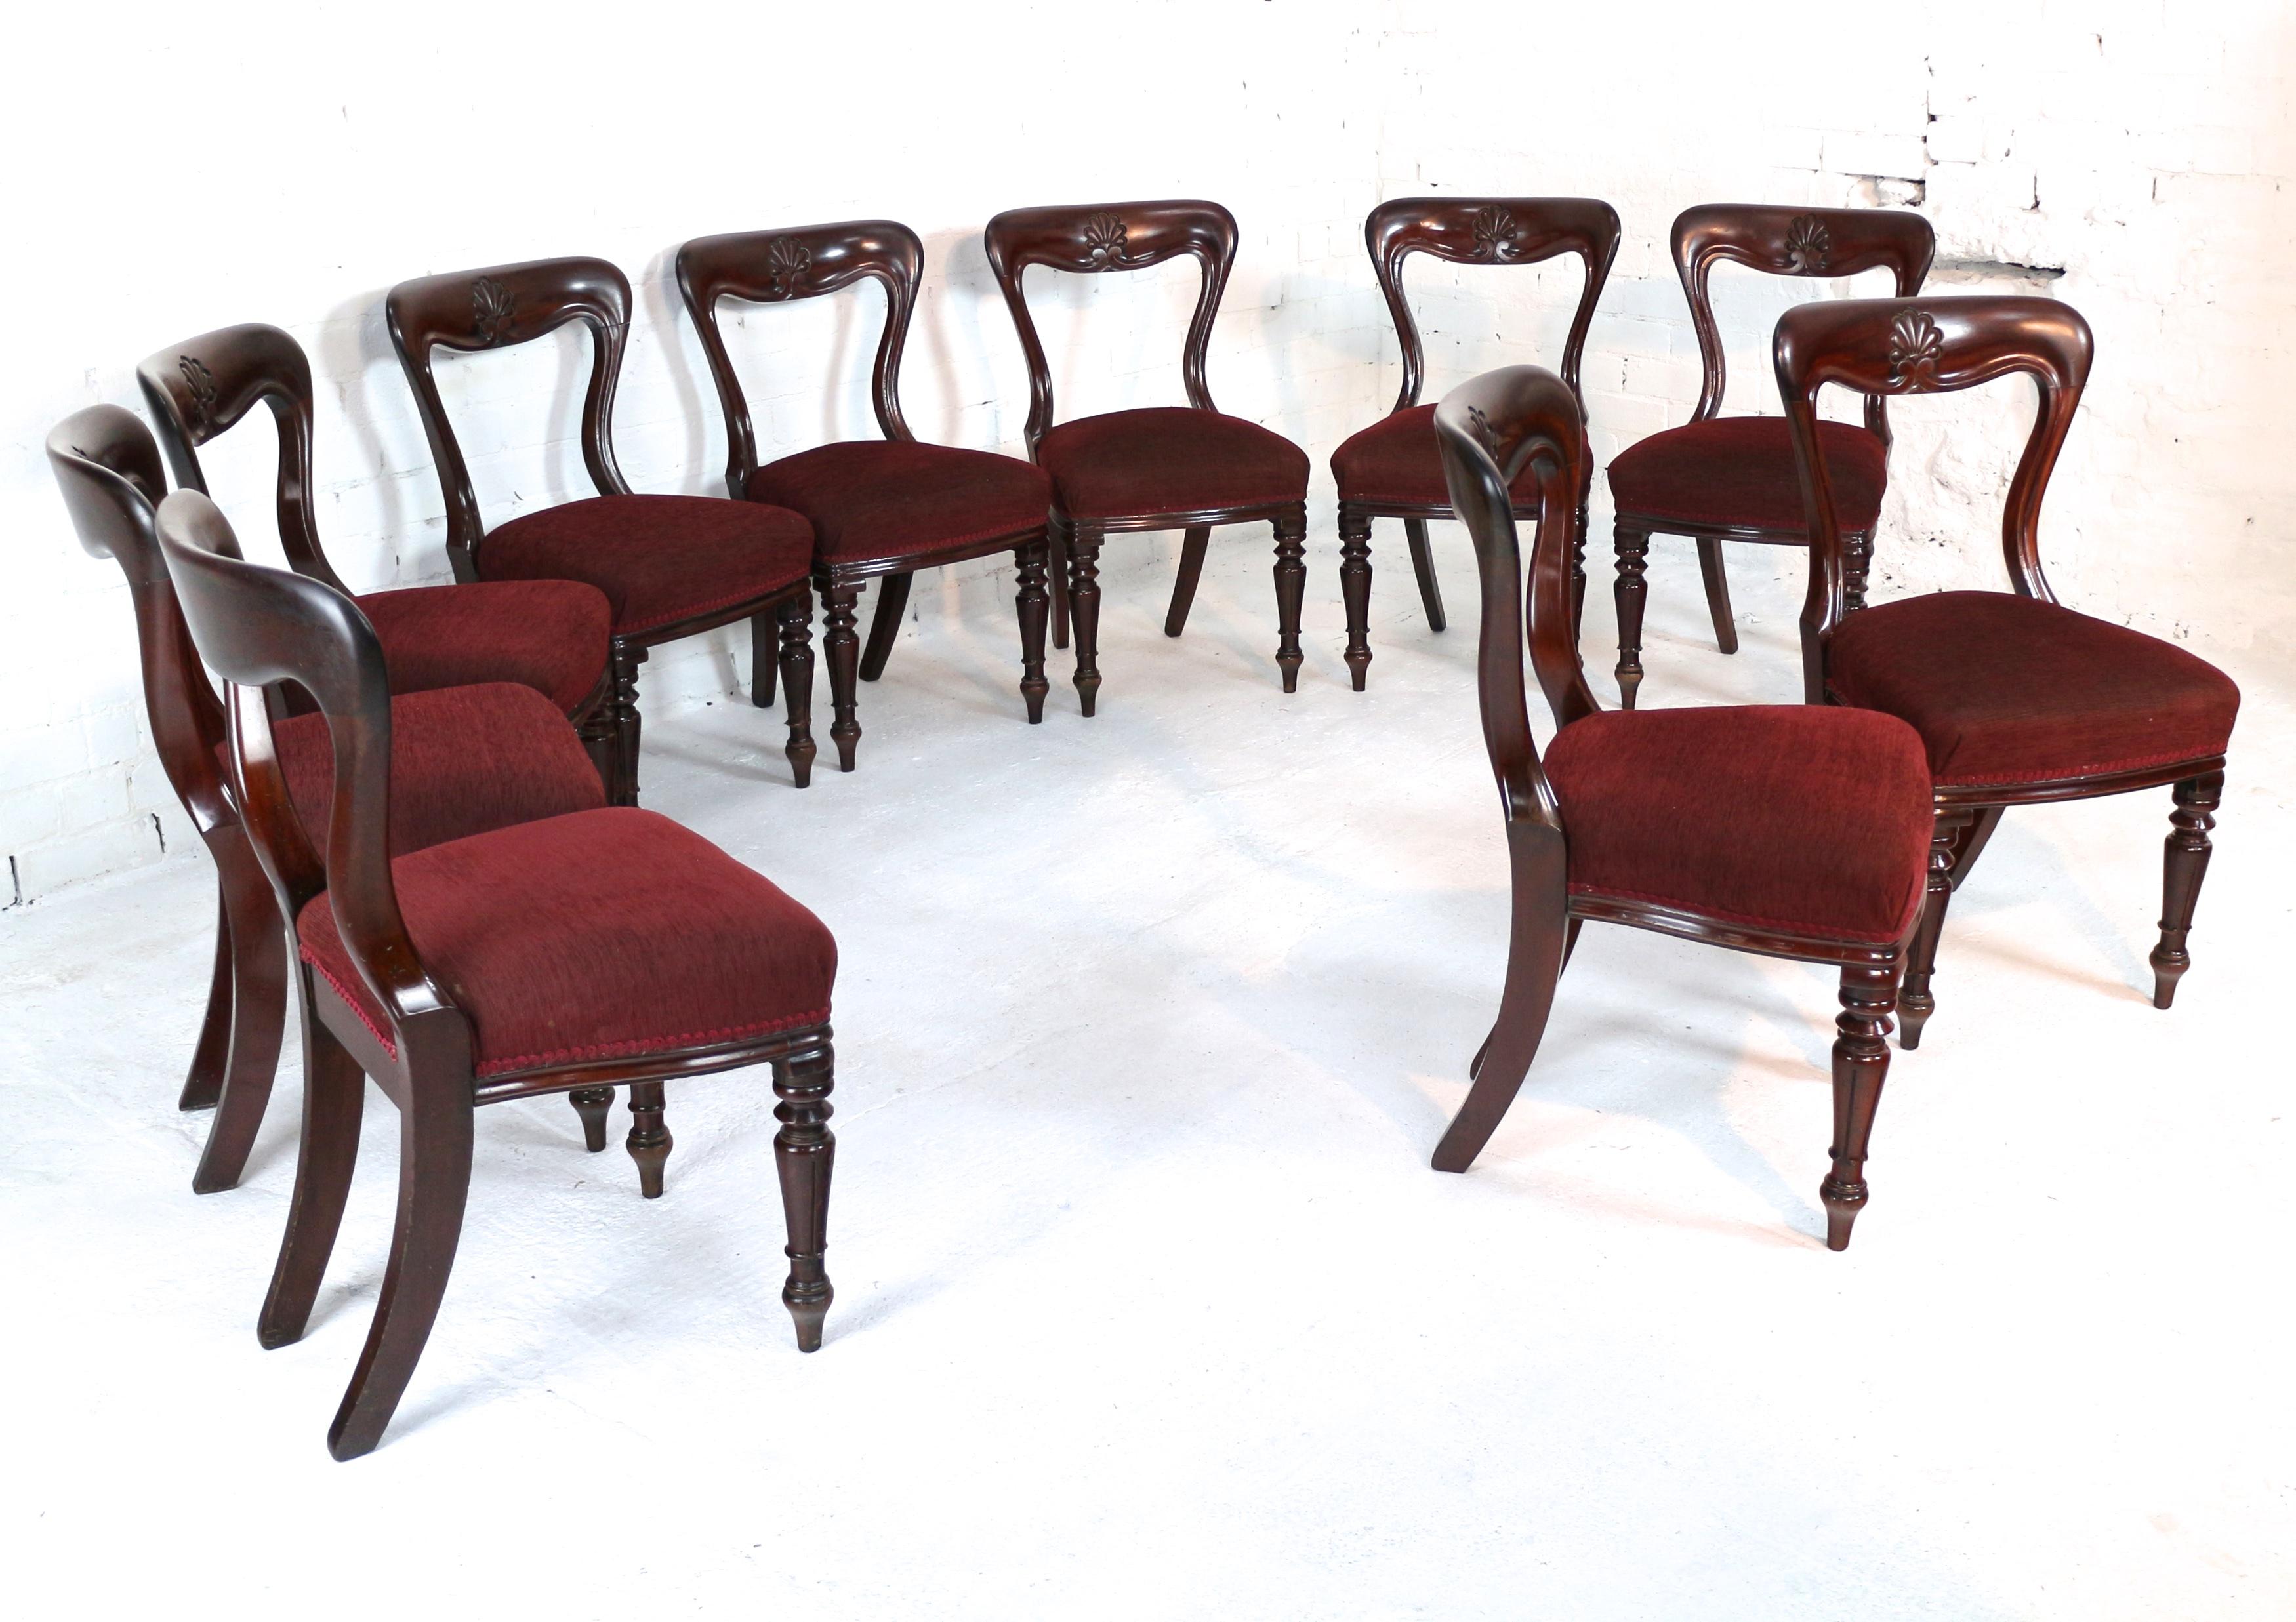 Un fantastique ensemble de dix chaises de salle à manger William IV en acajou datant d'environ 1830 et par J Proctor. Fabriquées dans un acajou dense et finement figuré de la meilleure qualité, ces chaises sont plus lourdes que les chaises standard